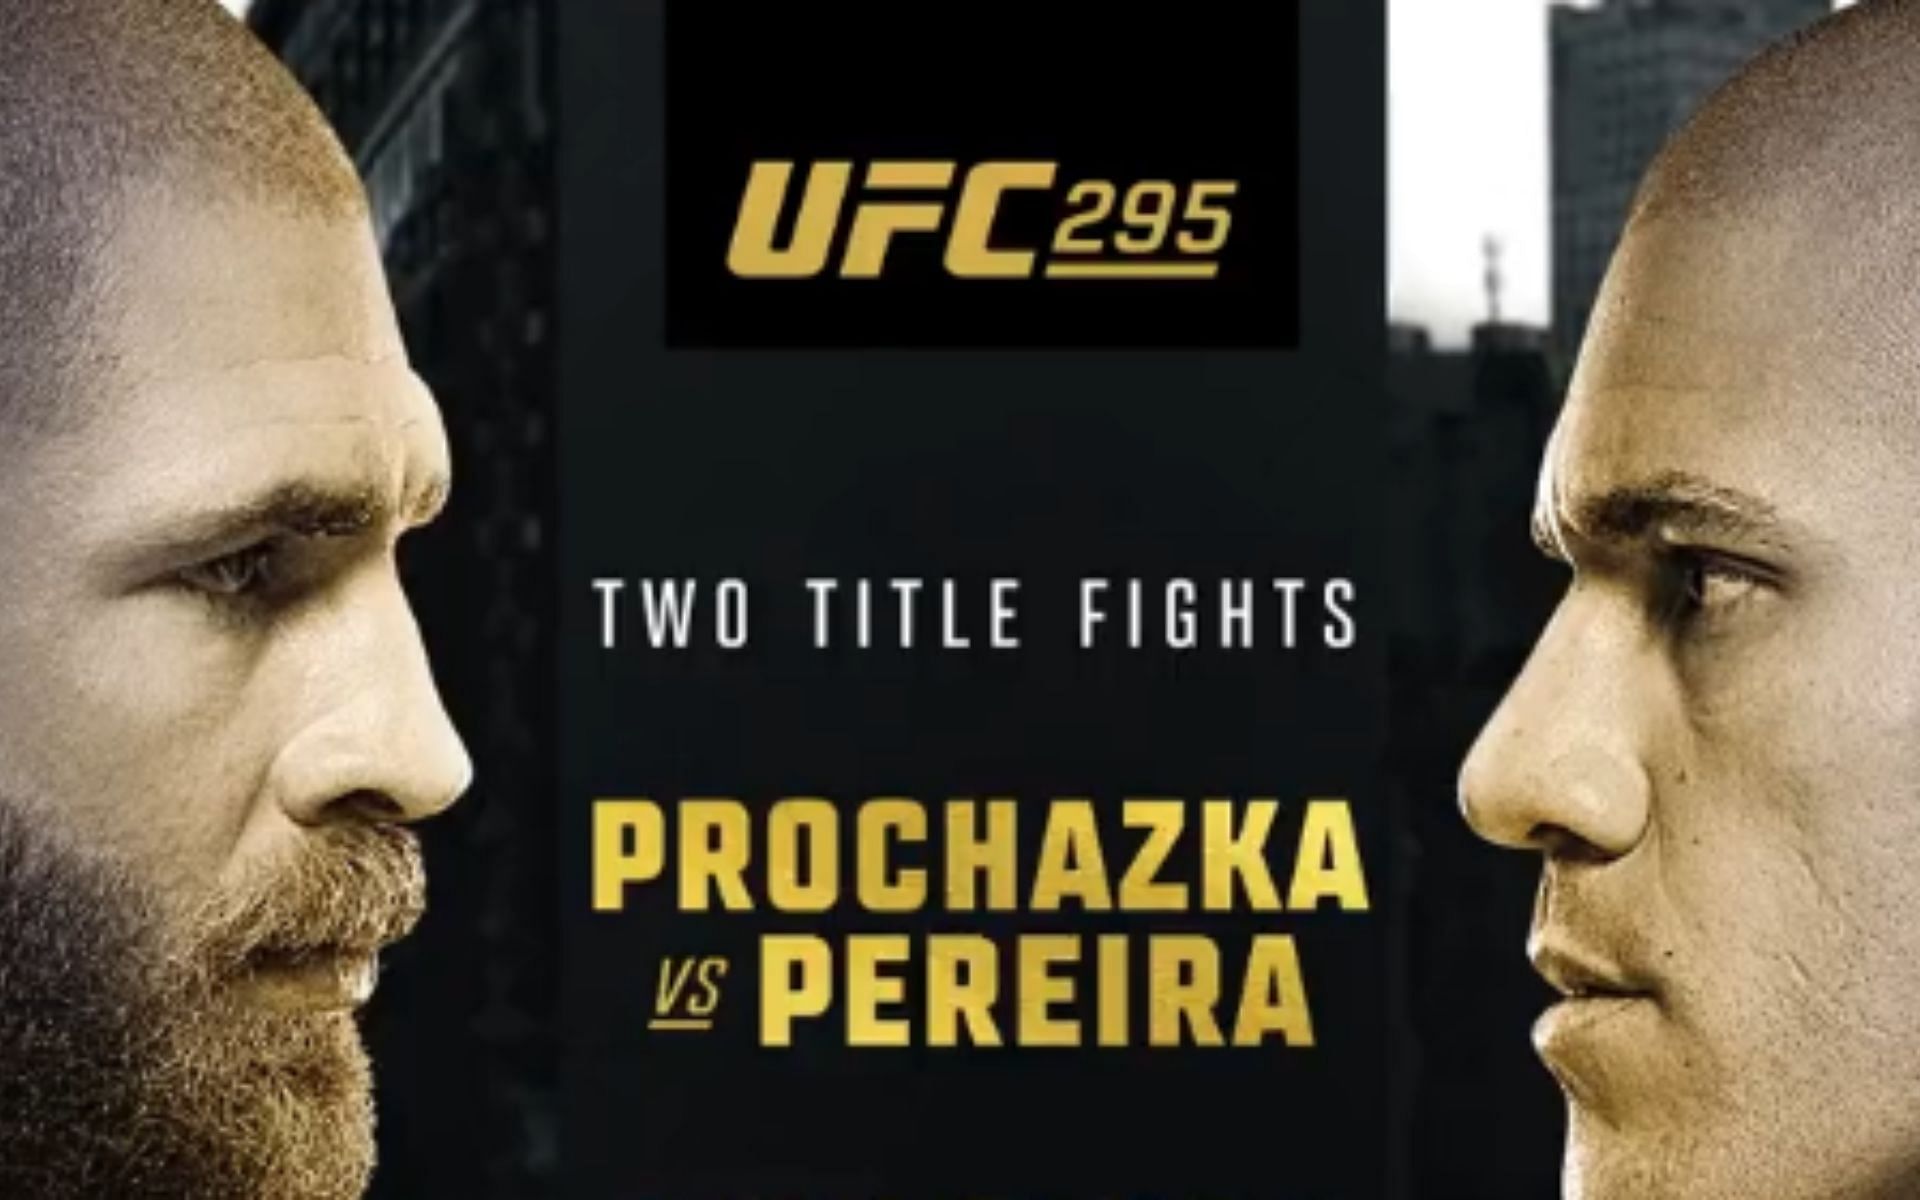 UFC 295: Prochazka vs. Pereira poster [Photo credit: @ufc - X]